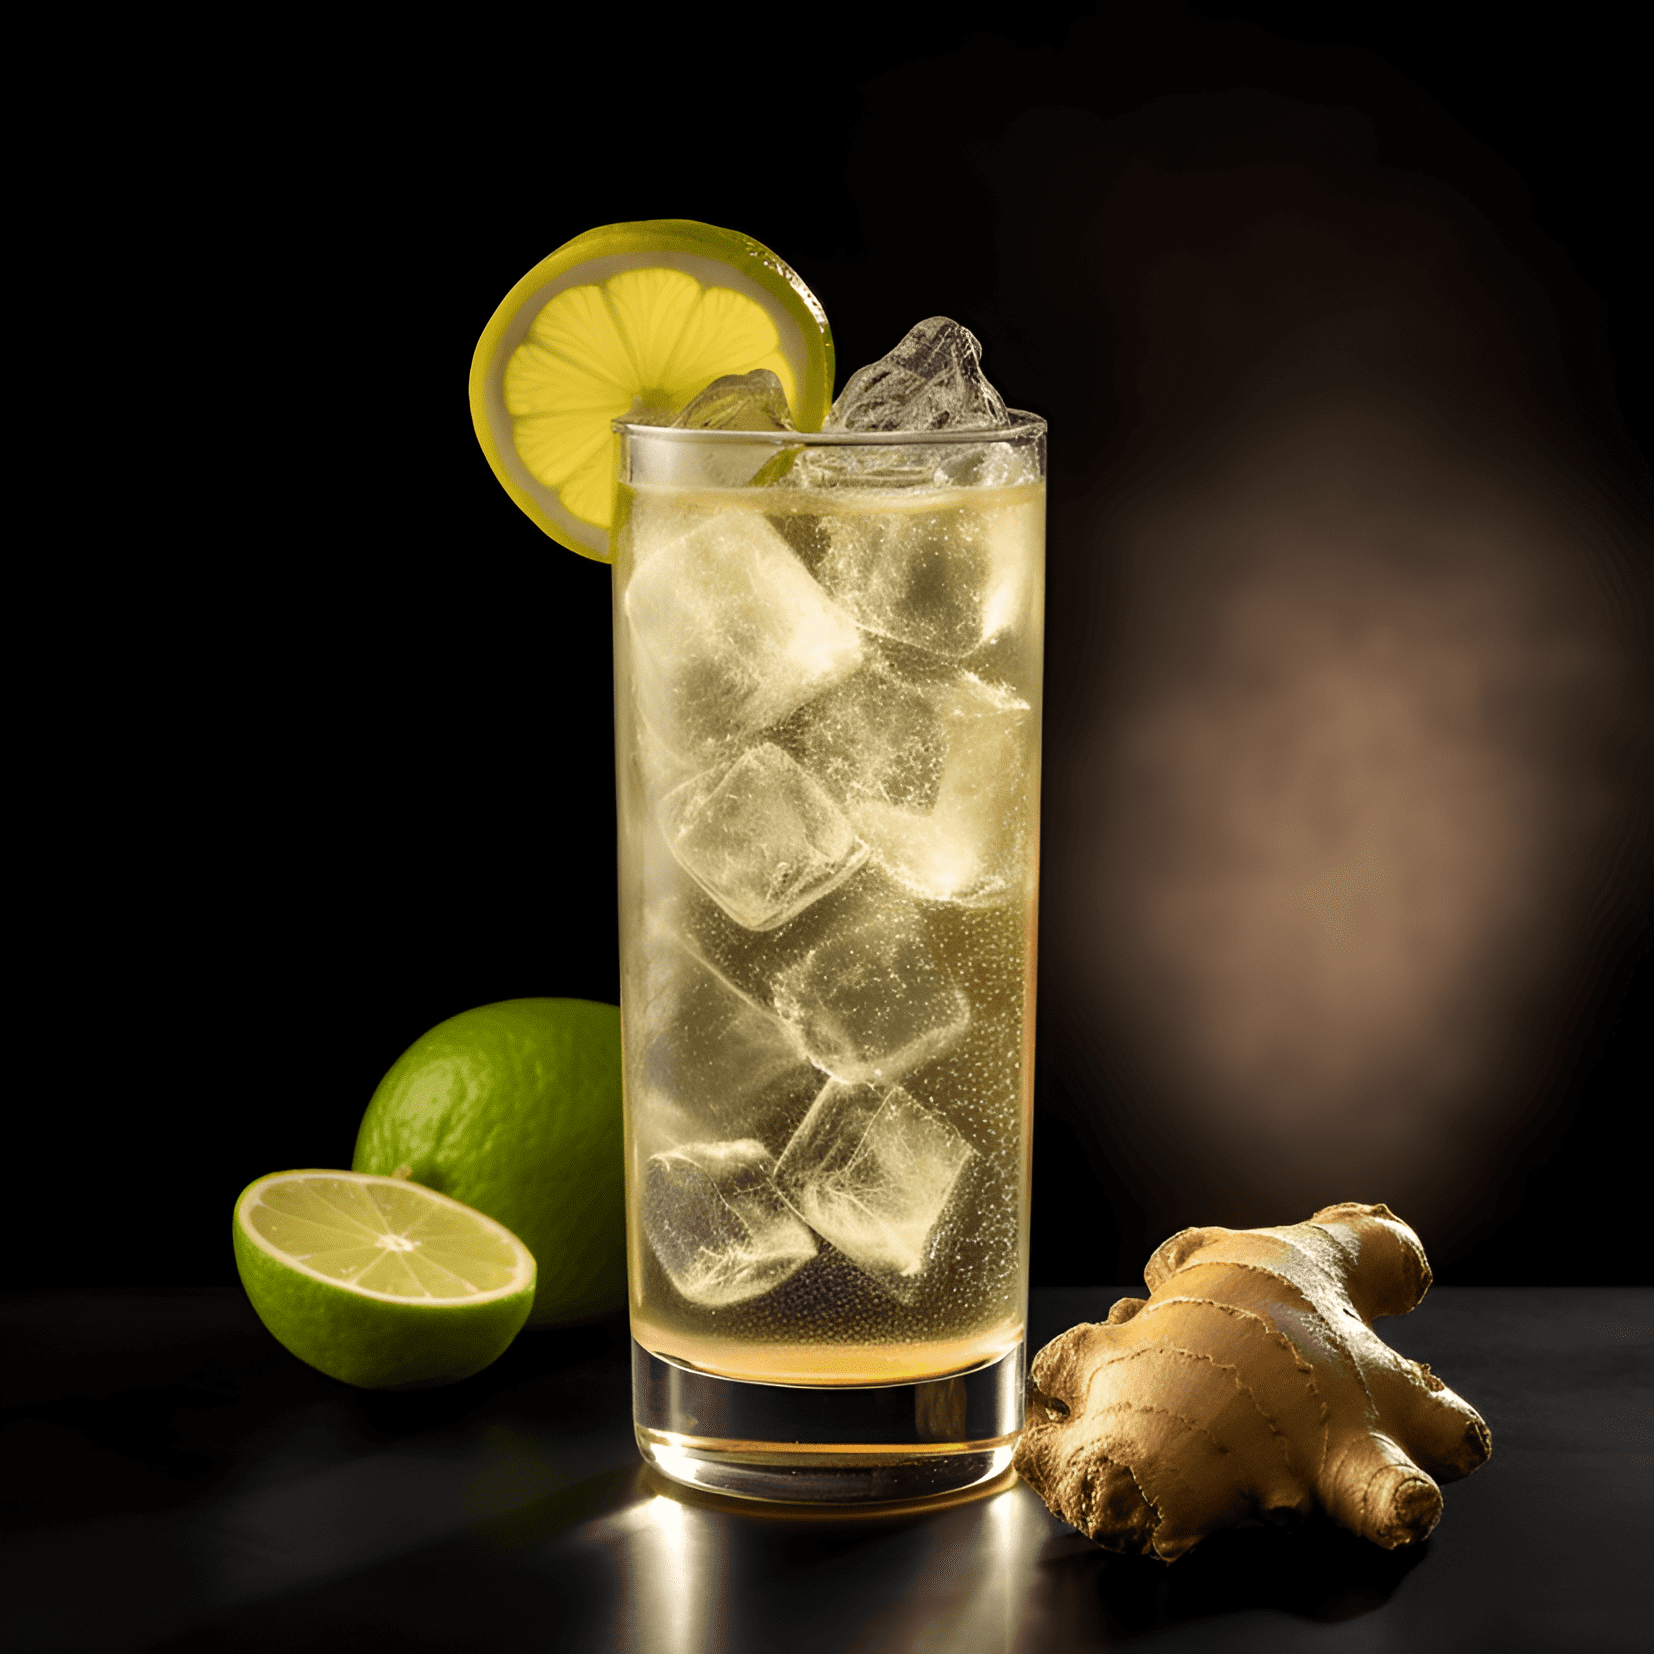 Ginger Highball Cóctel Receta - El Ginger Highball tiene un sabor bien equilibrado que es dulce y picante. El whisky proporciona un sabor cálido y rico, mientras que el ginger ale agrega un toque refrescante y efervescente. La combinación de sabores crea un cóctel ligero, crujiente y vigorizante.